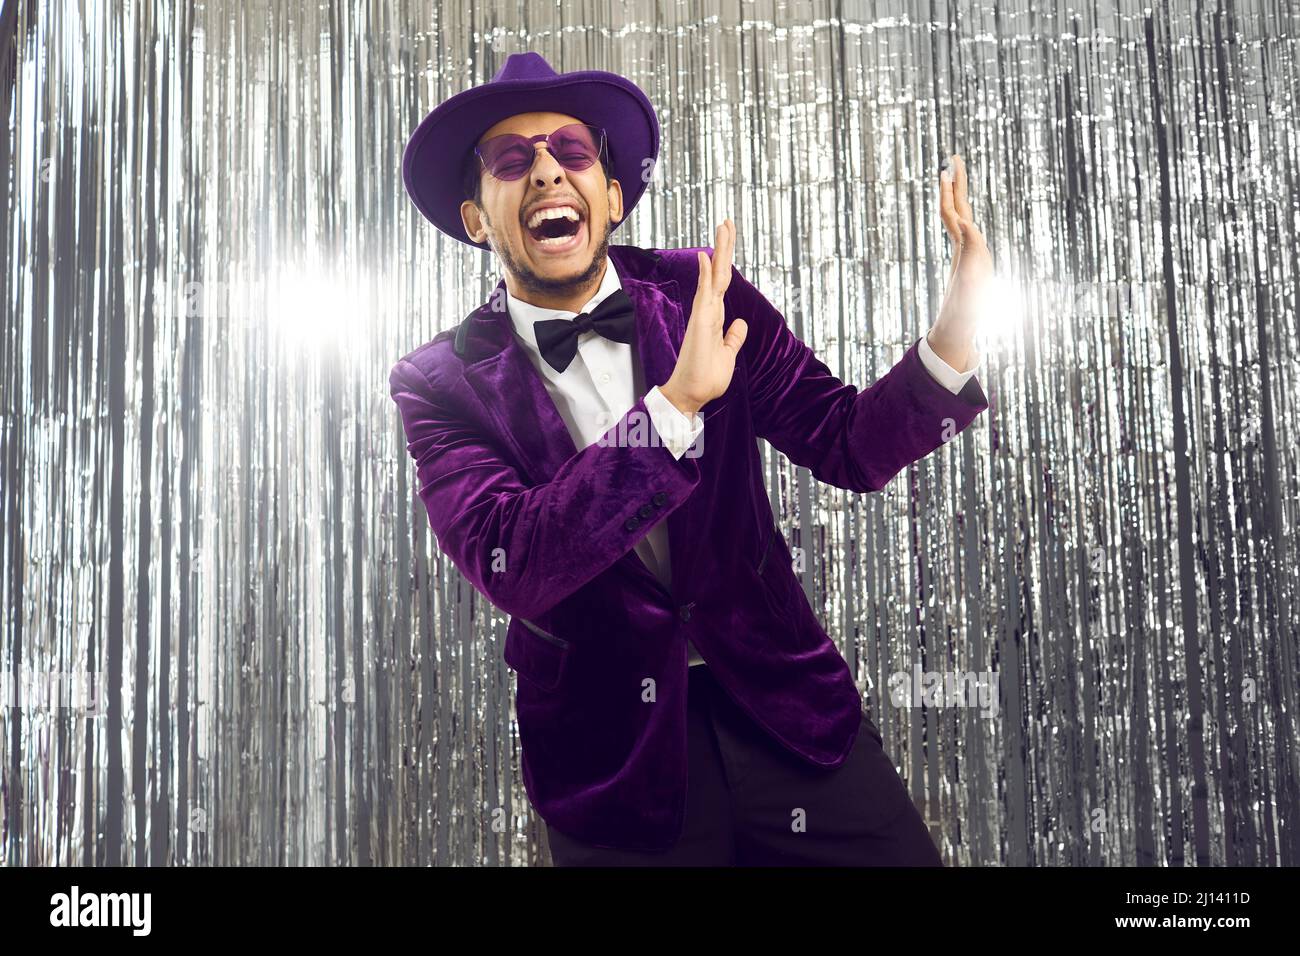 Joyeux drôle goofy homme dans un costume violet, des lunettes et un chapeau  dansant et riant à une fête Photo Stock - Alamy